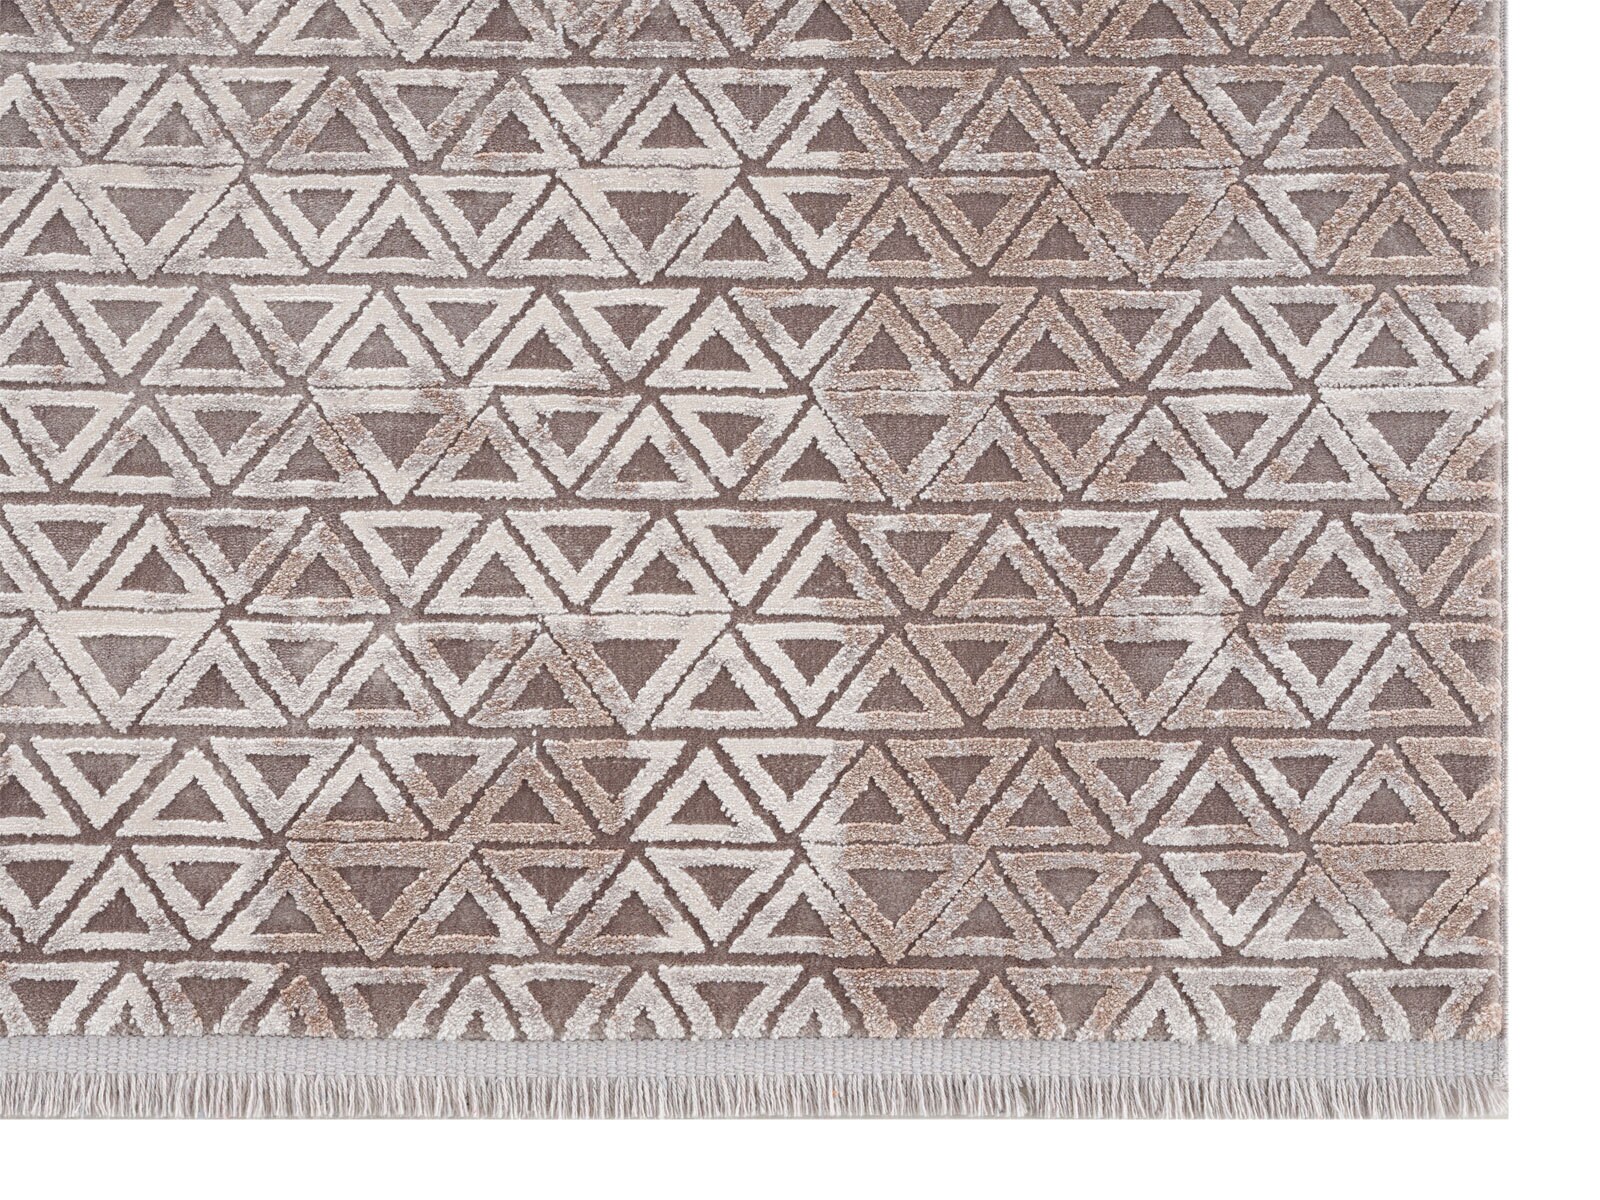 SCHÖNER WOHNEN-Kollektion Teppich VISION 133 x 190 cm beige 